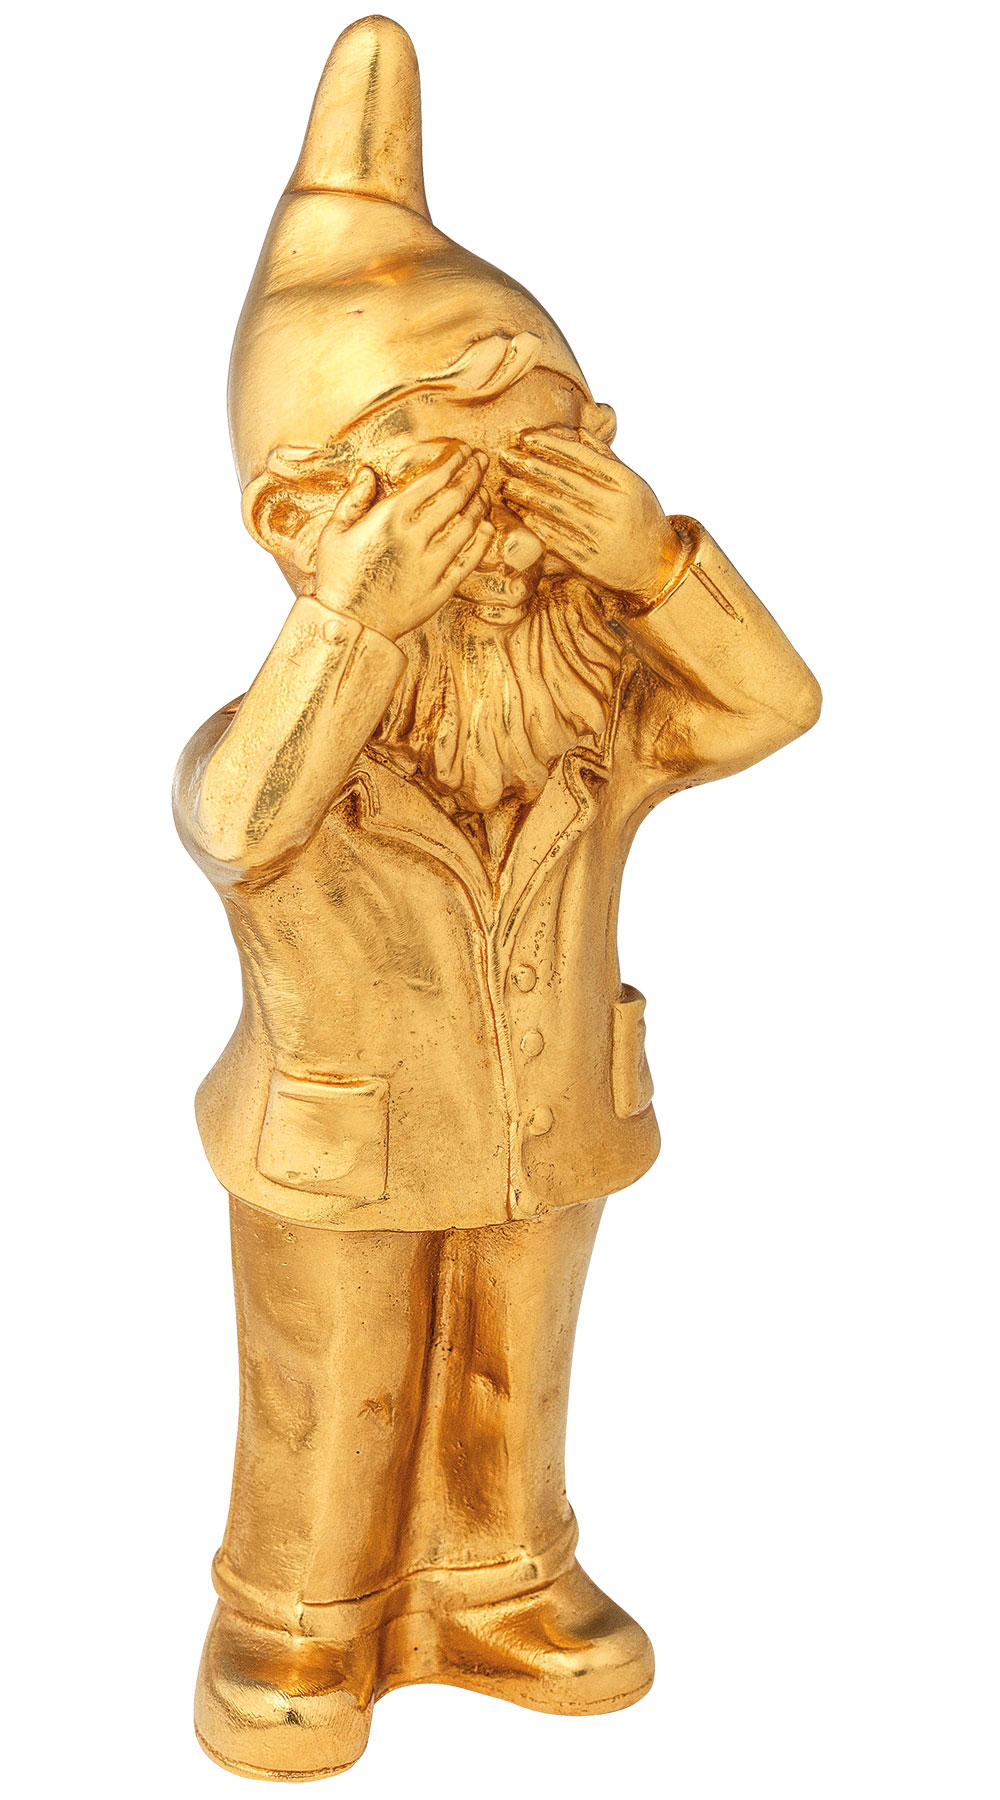 Skulptur "Geheimnisträger - Nichts sehen", Version vergoldet von Ottmar Hörl